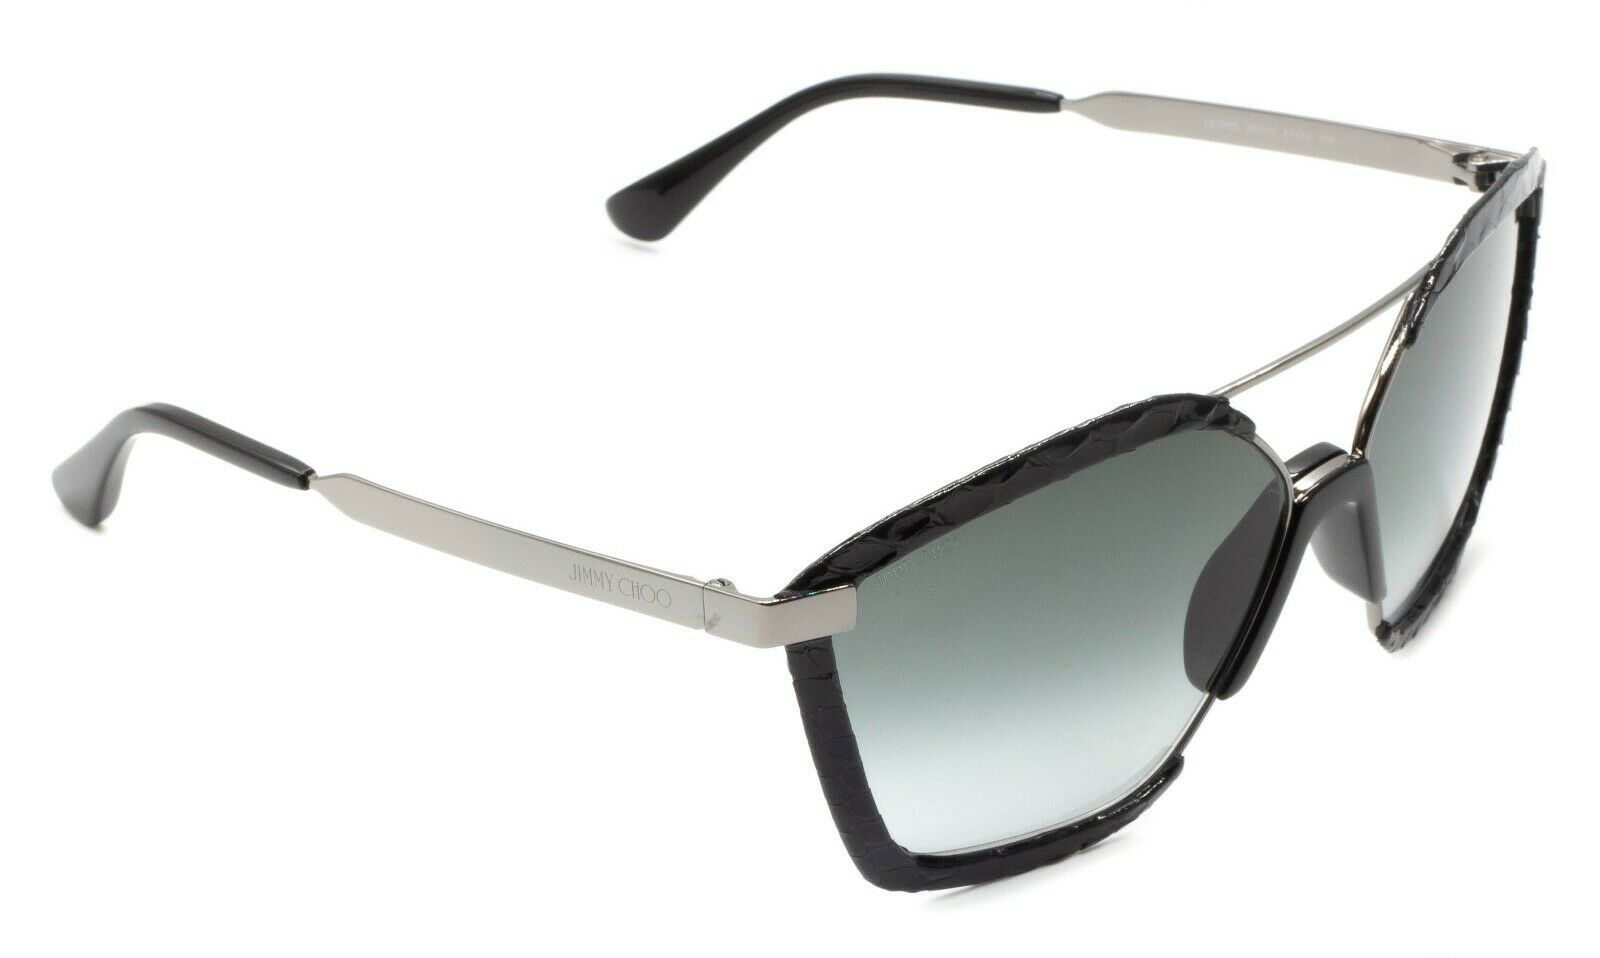 JIMMY CHOO LEON/S 8079O 61mm Sunglasses Shades Frames Eyewear New BNIB - ITALY